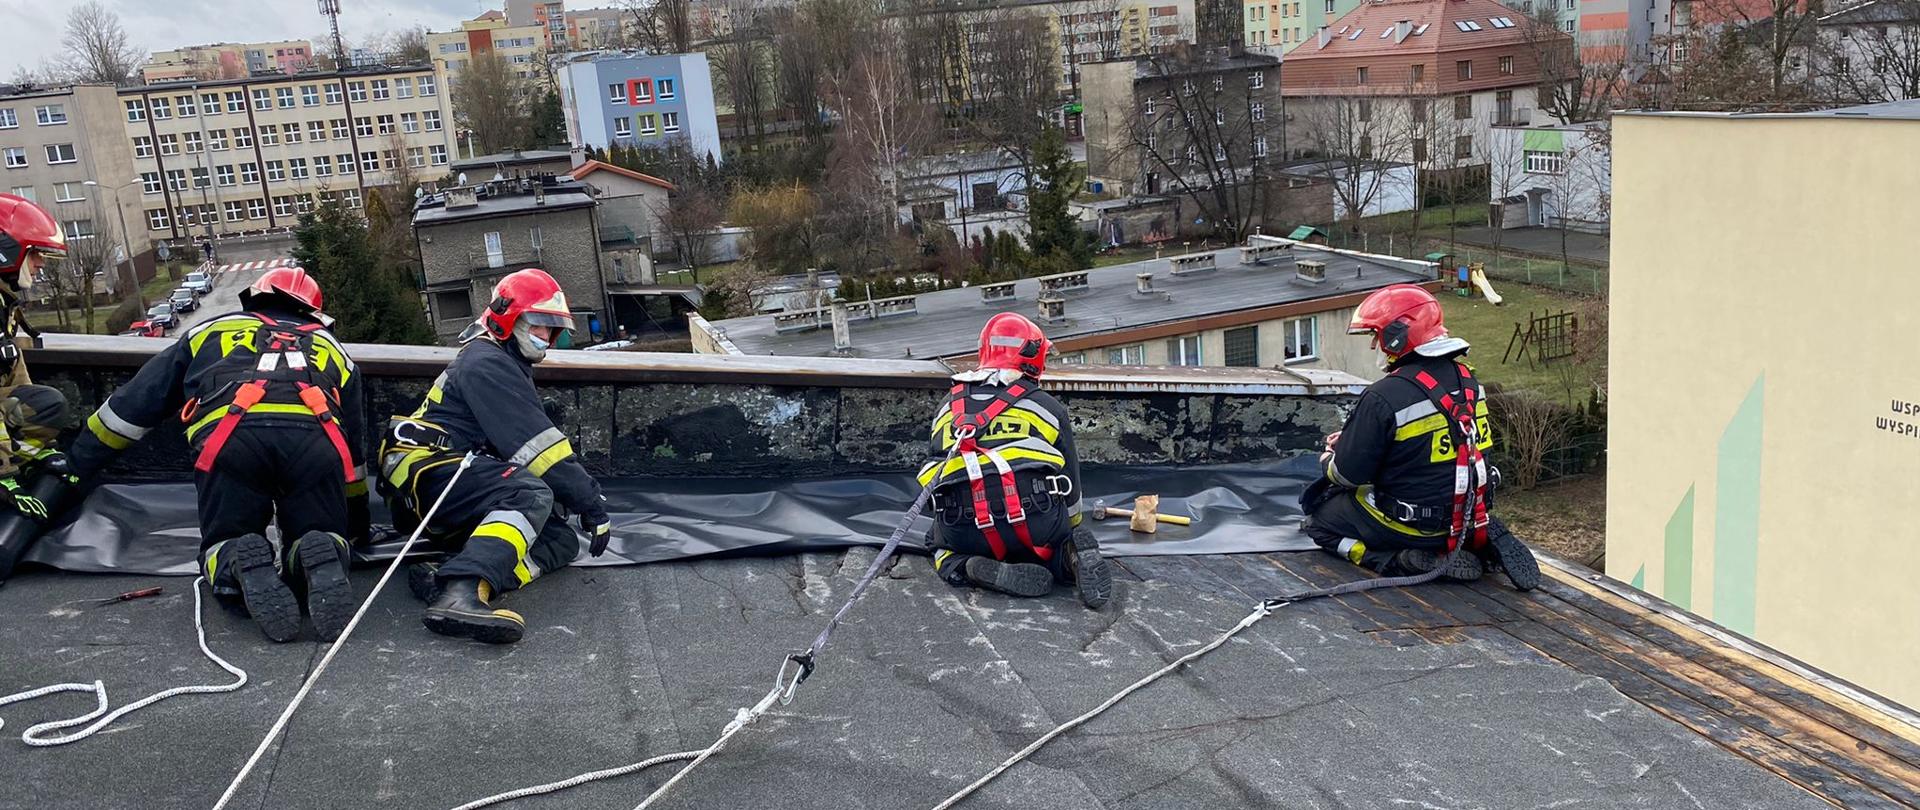 Strażacy w zabezpieczeniach zabezpieczają dach przed działaniami atmosferycznymi